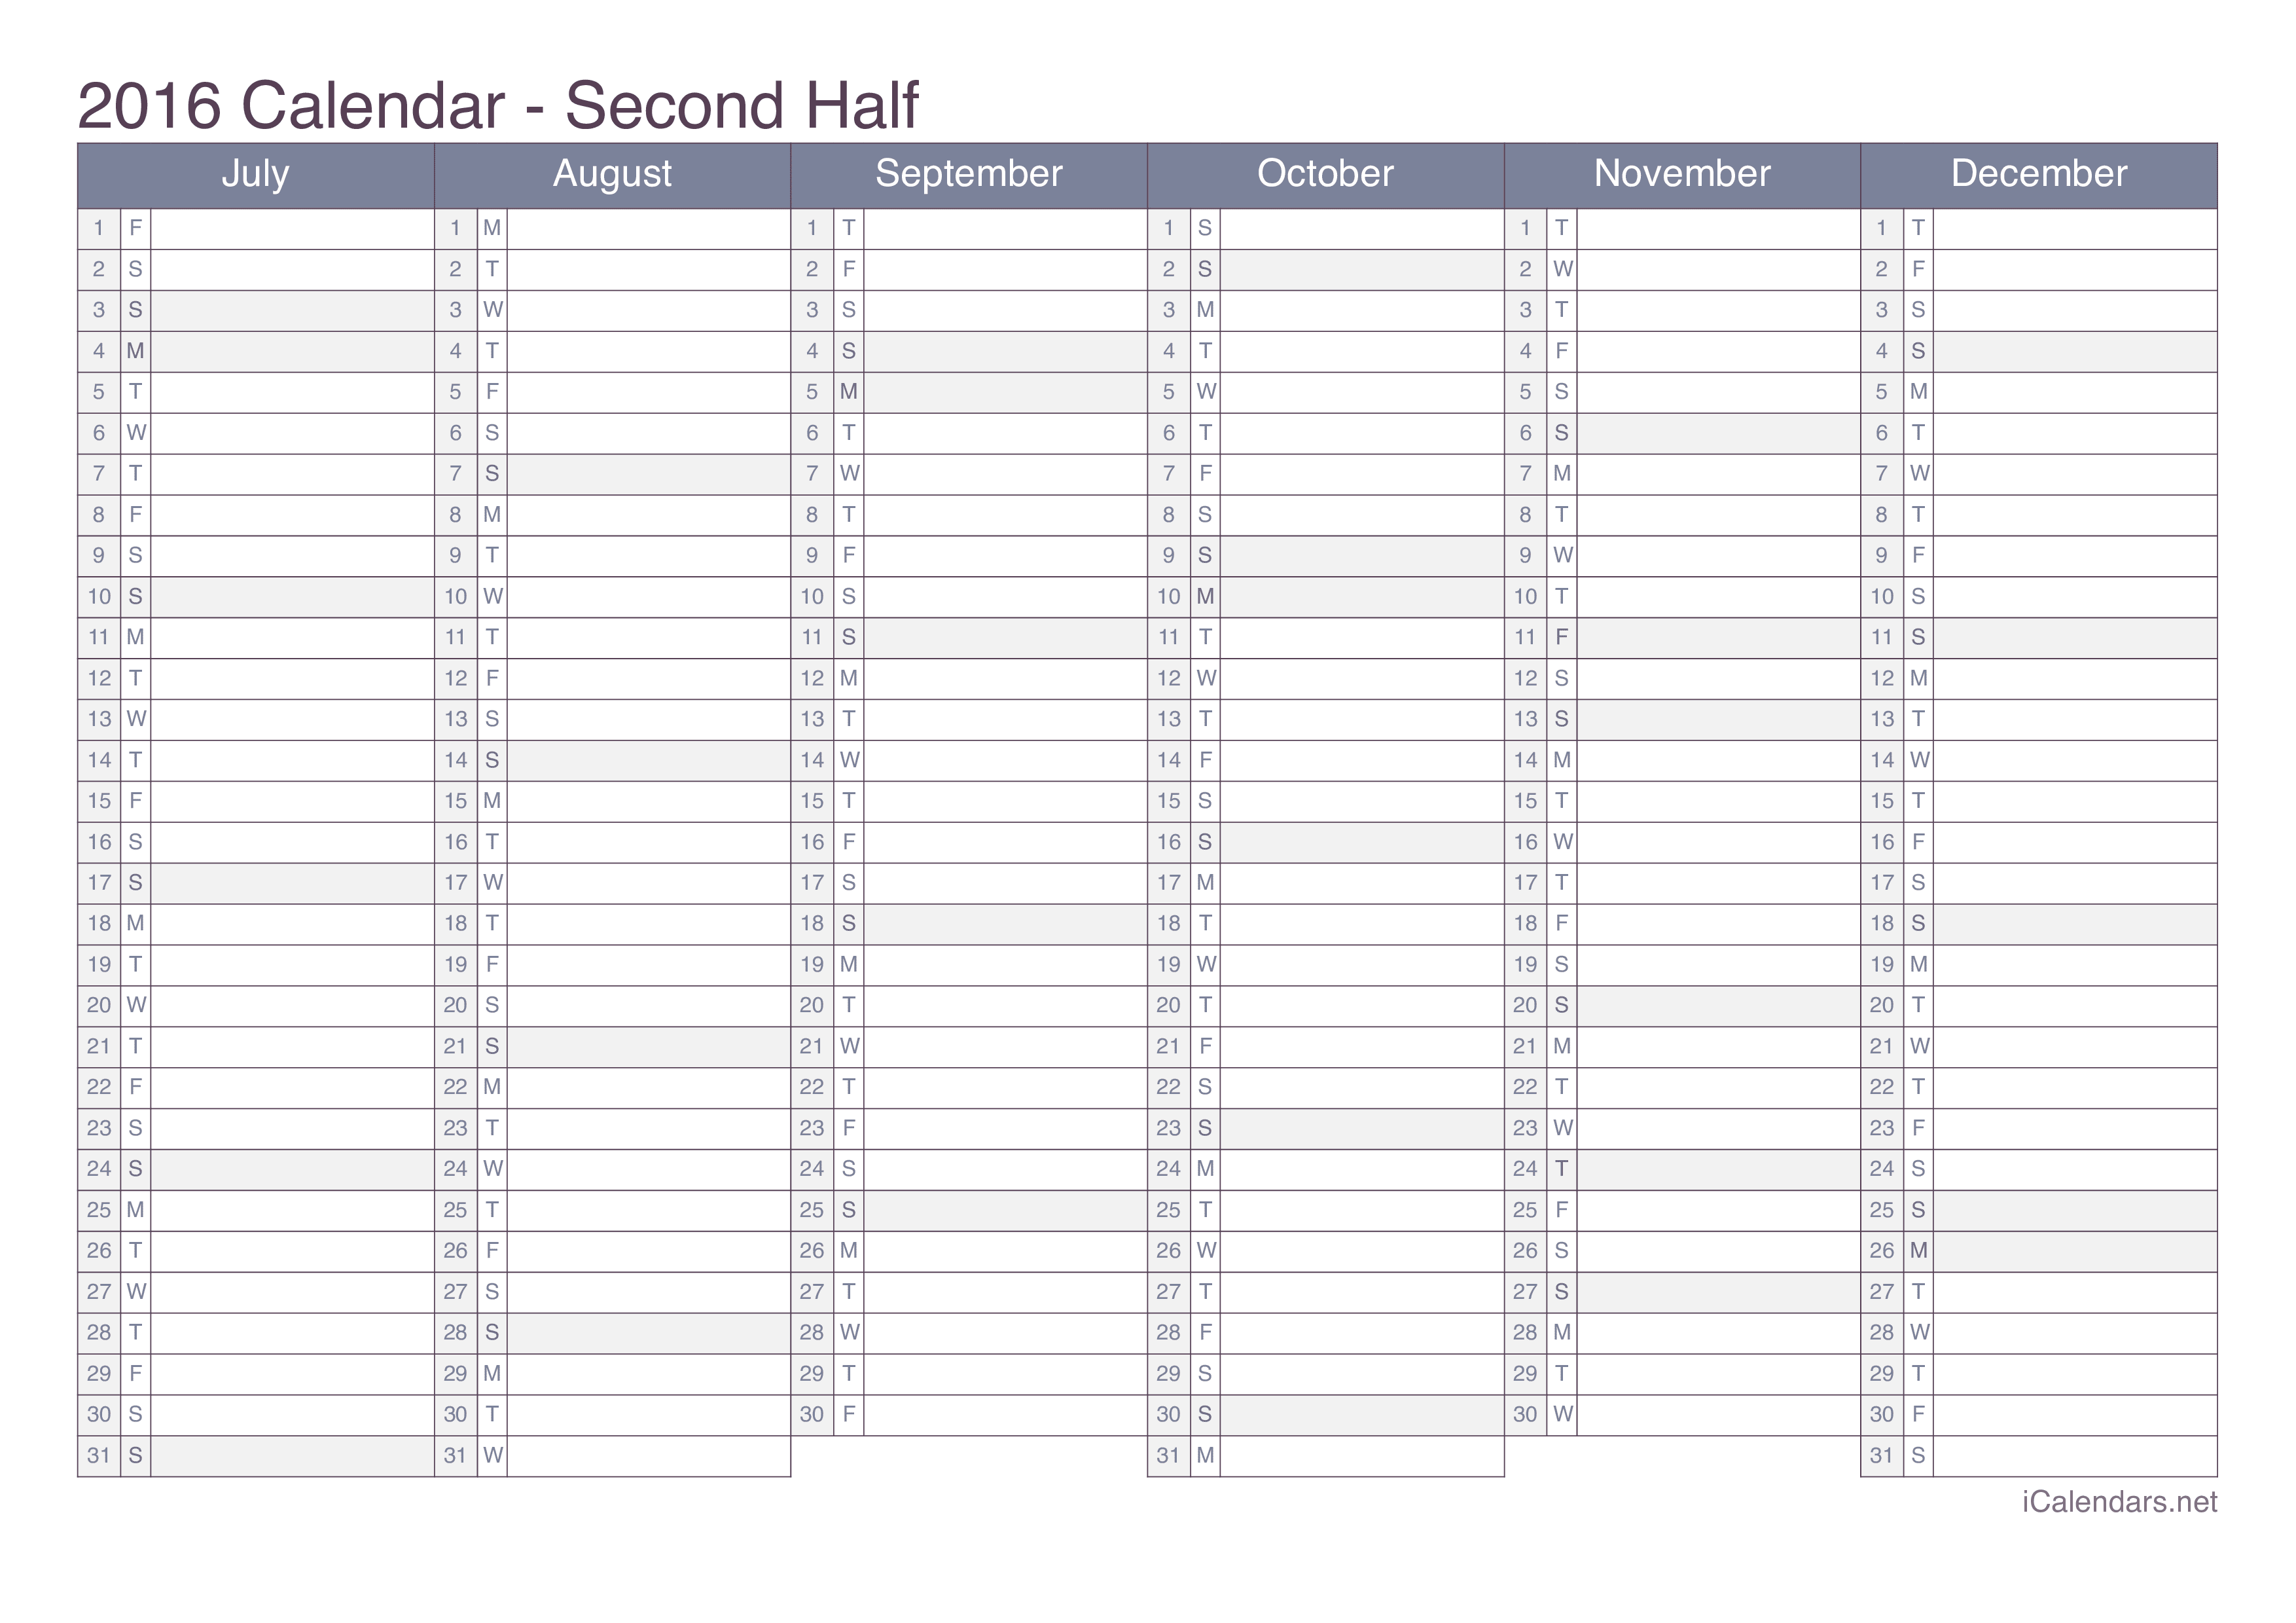 kiwi Procent Mindst 2016 Printable Calendar - PDF or Excel - icalendars.net